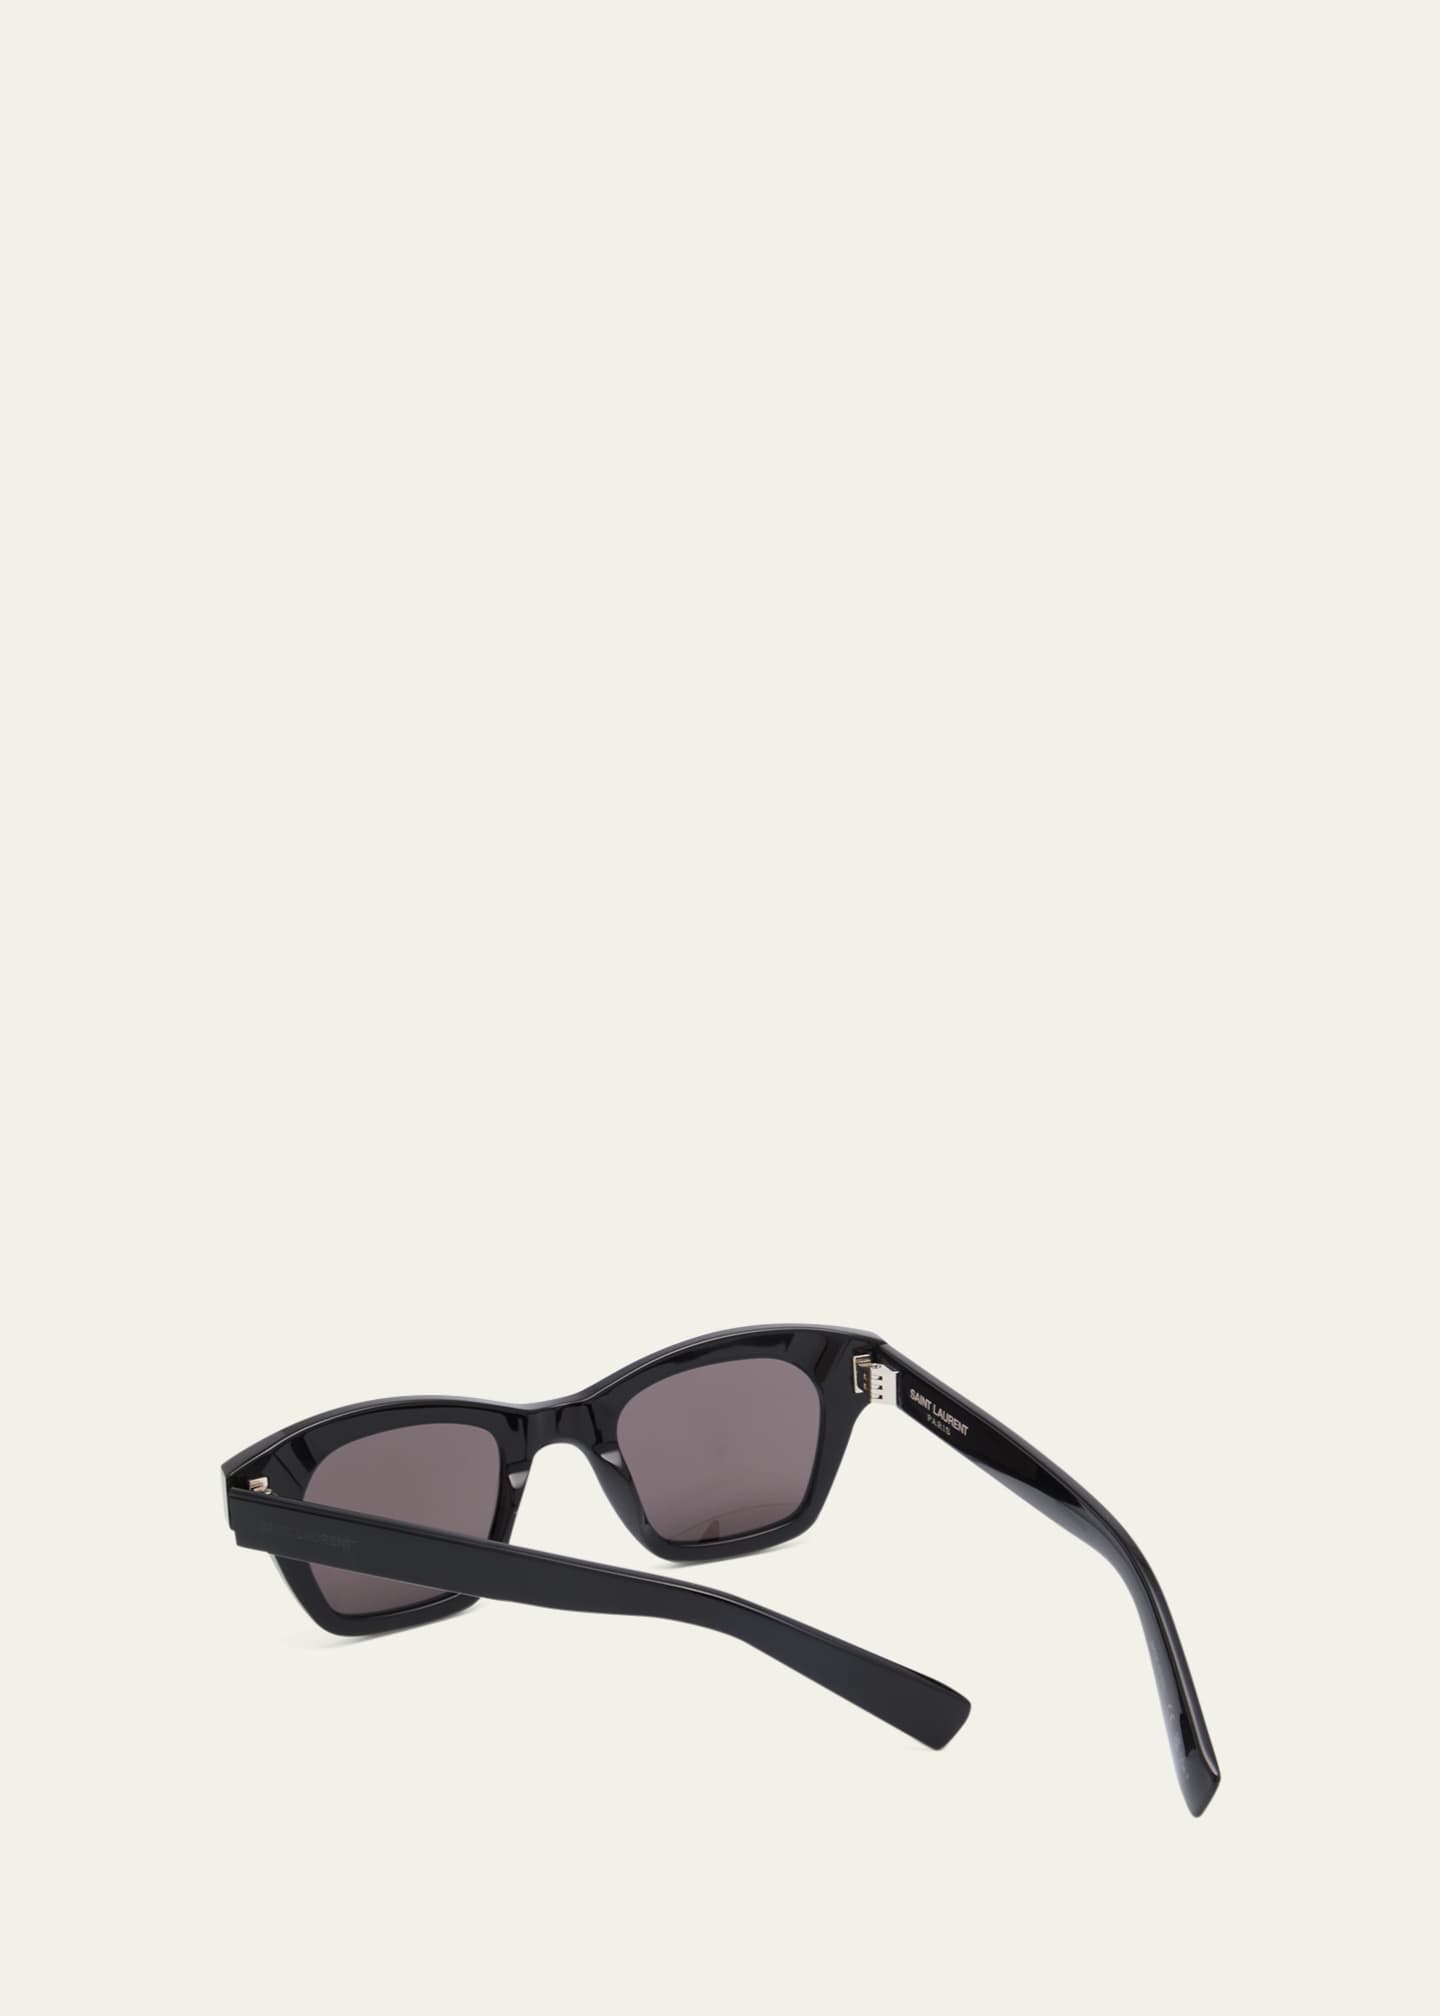 Saint Laurent SL 592 Sunglasses in Beige